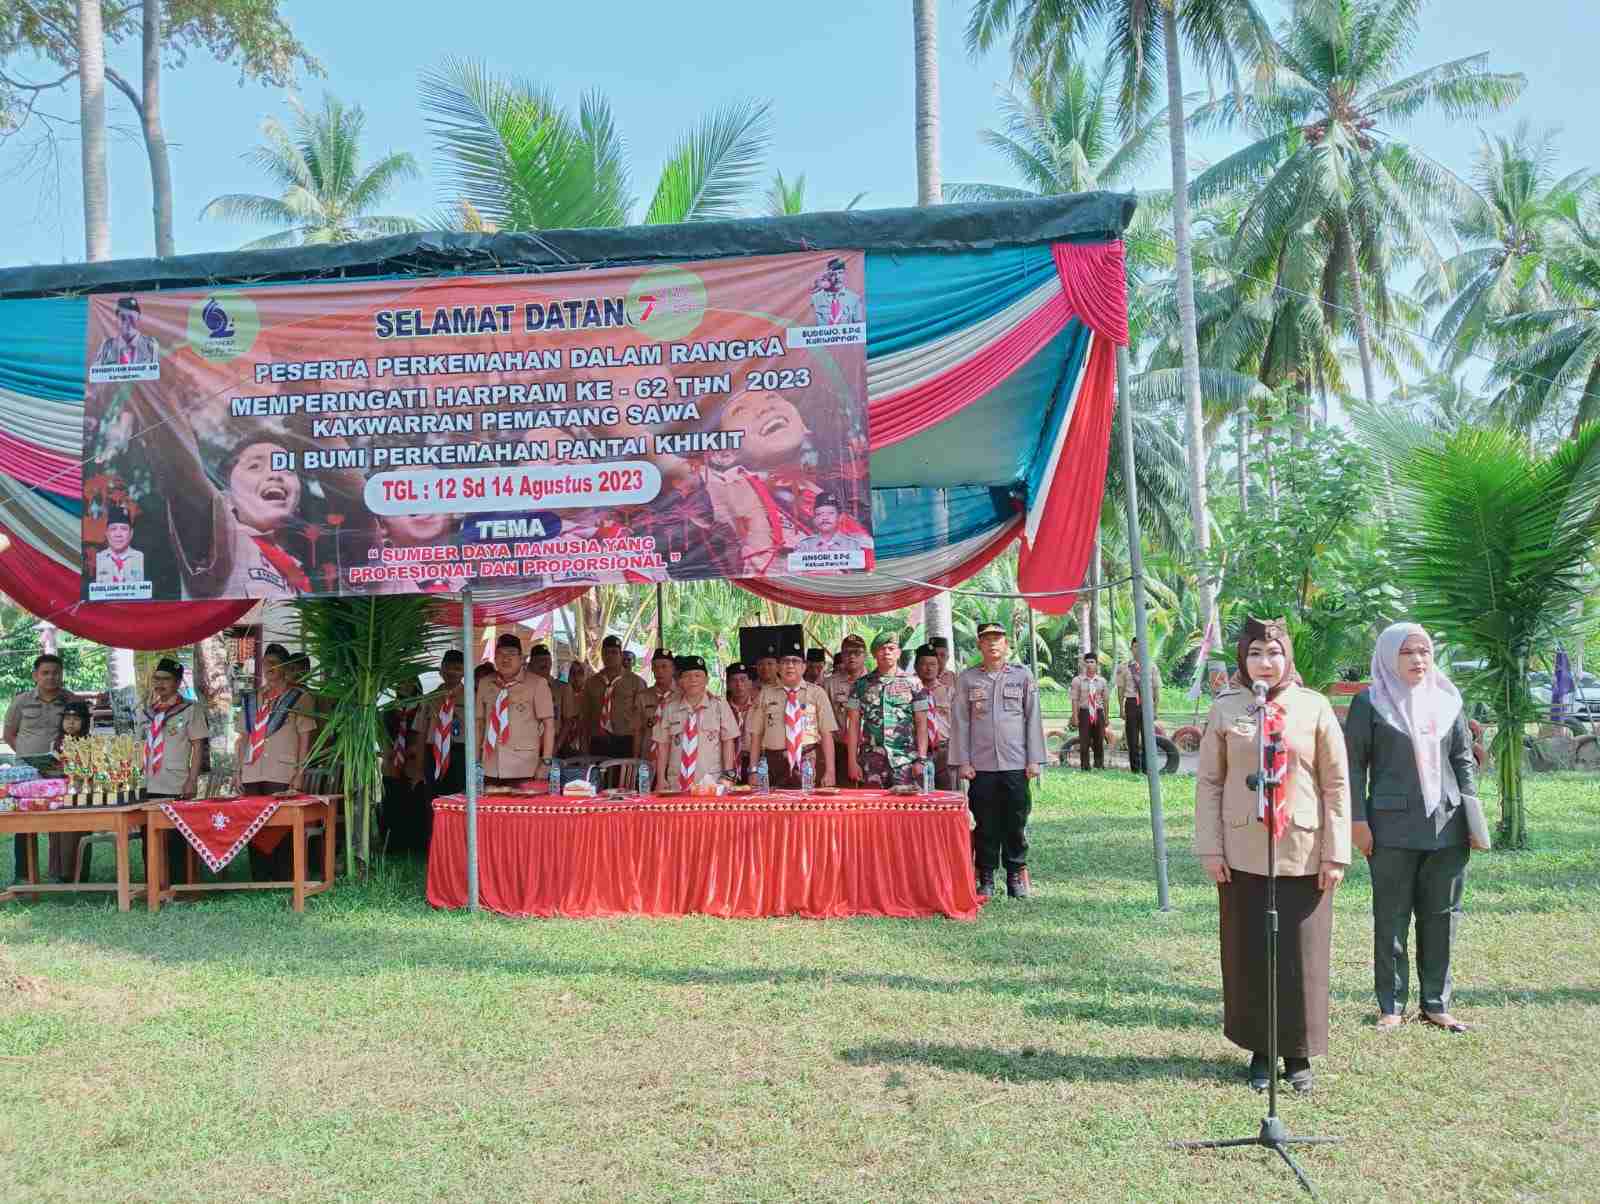 Bupati Tanggamus Lampung: Gerakan Pramuka Membentuk Karakter Tangguh dan Cinta Tanah Air